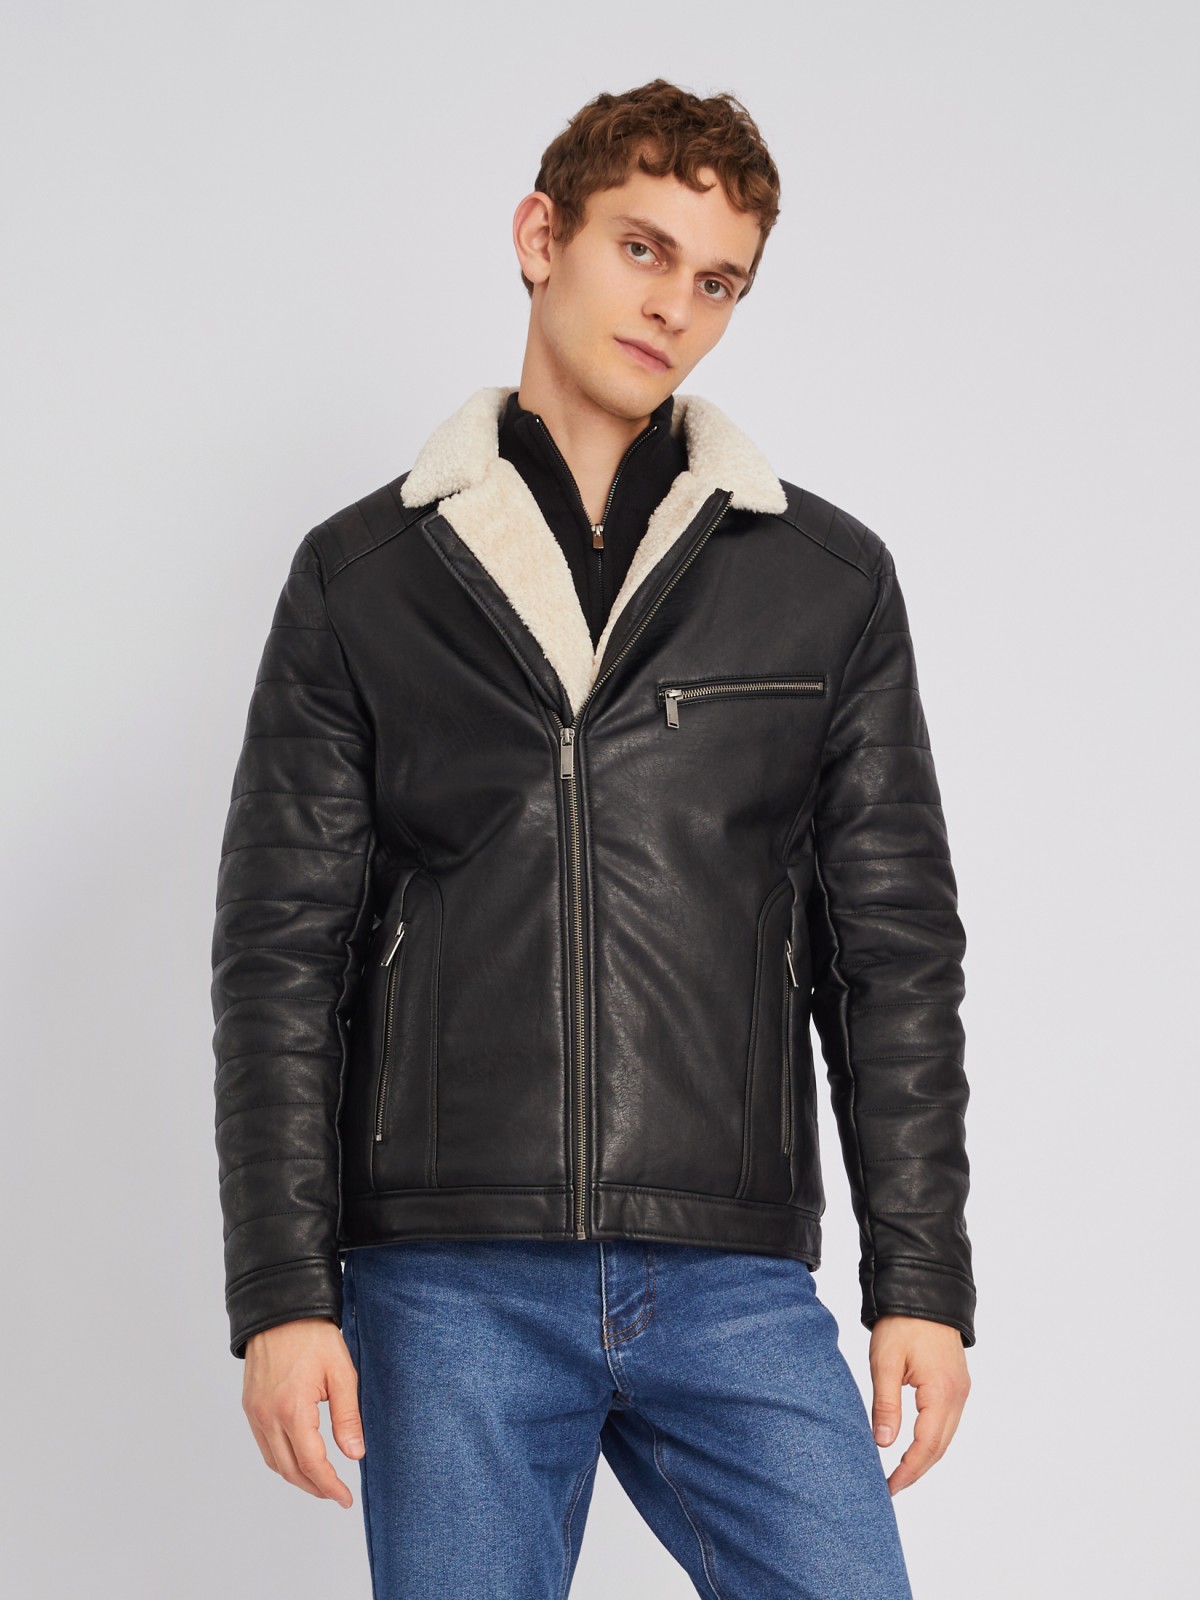 Тёплая куртка-косуха из экокожи с подкладкой из экомеха на синтепоне zolla черного цвета